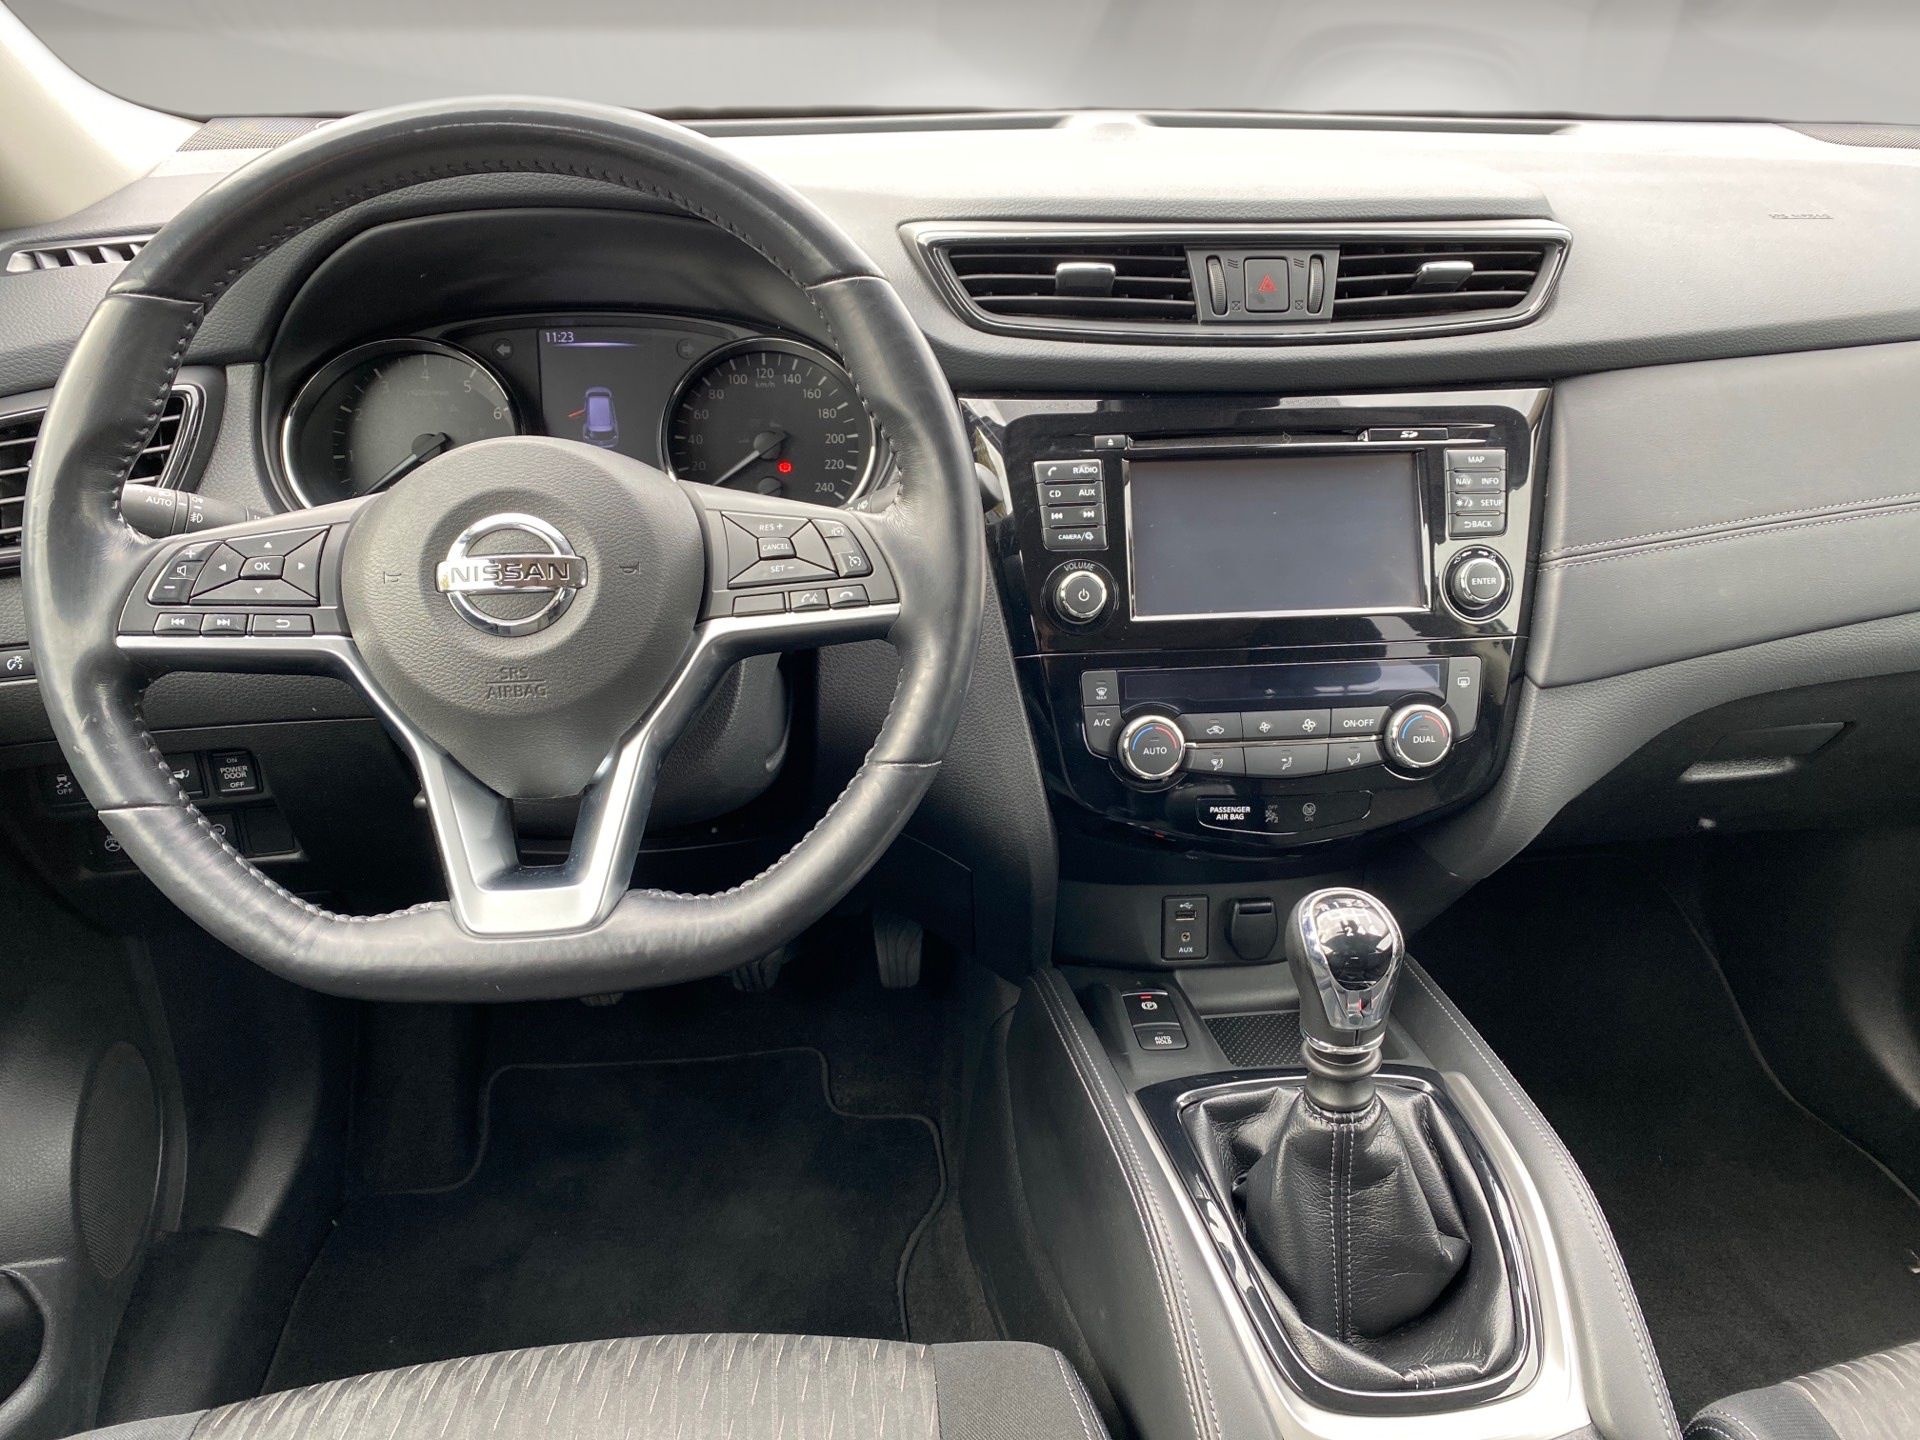 Fahrzeugfotografie: Nissan Innenaufnahme mit freigestelltem Blick durch das Fenster